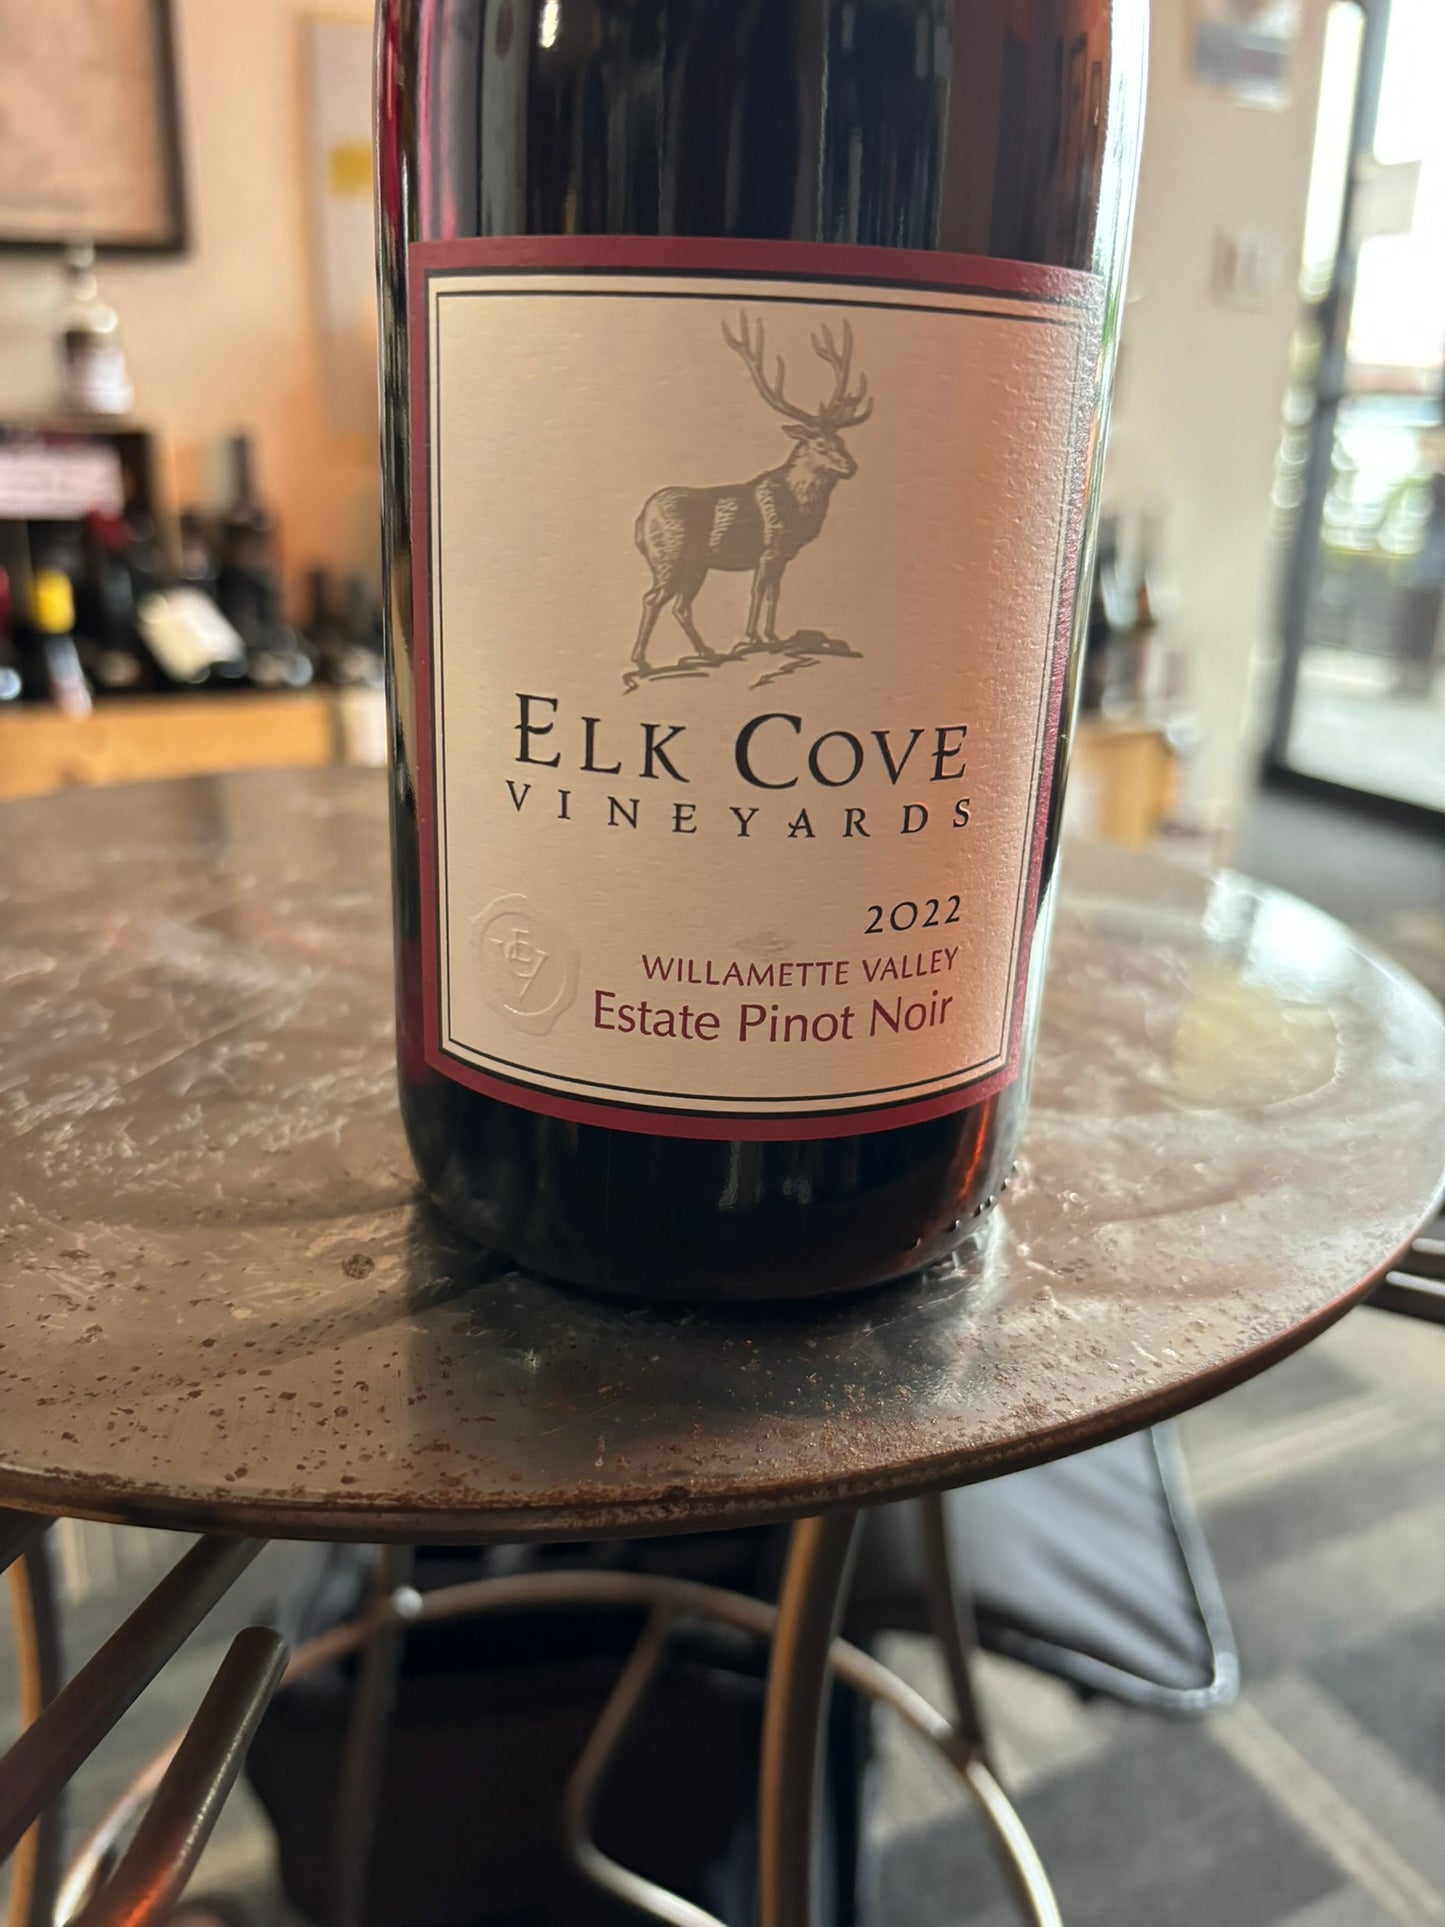 ELK COVE VINEYARDS 2022 Estate Pinot Noir (Willamette Valley, OR)